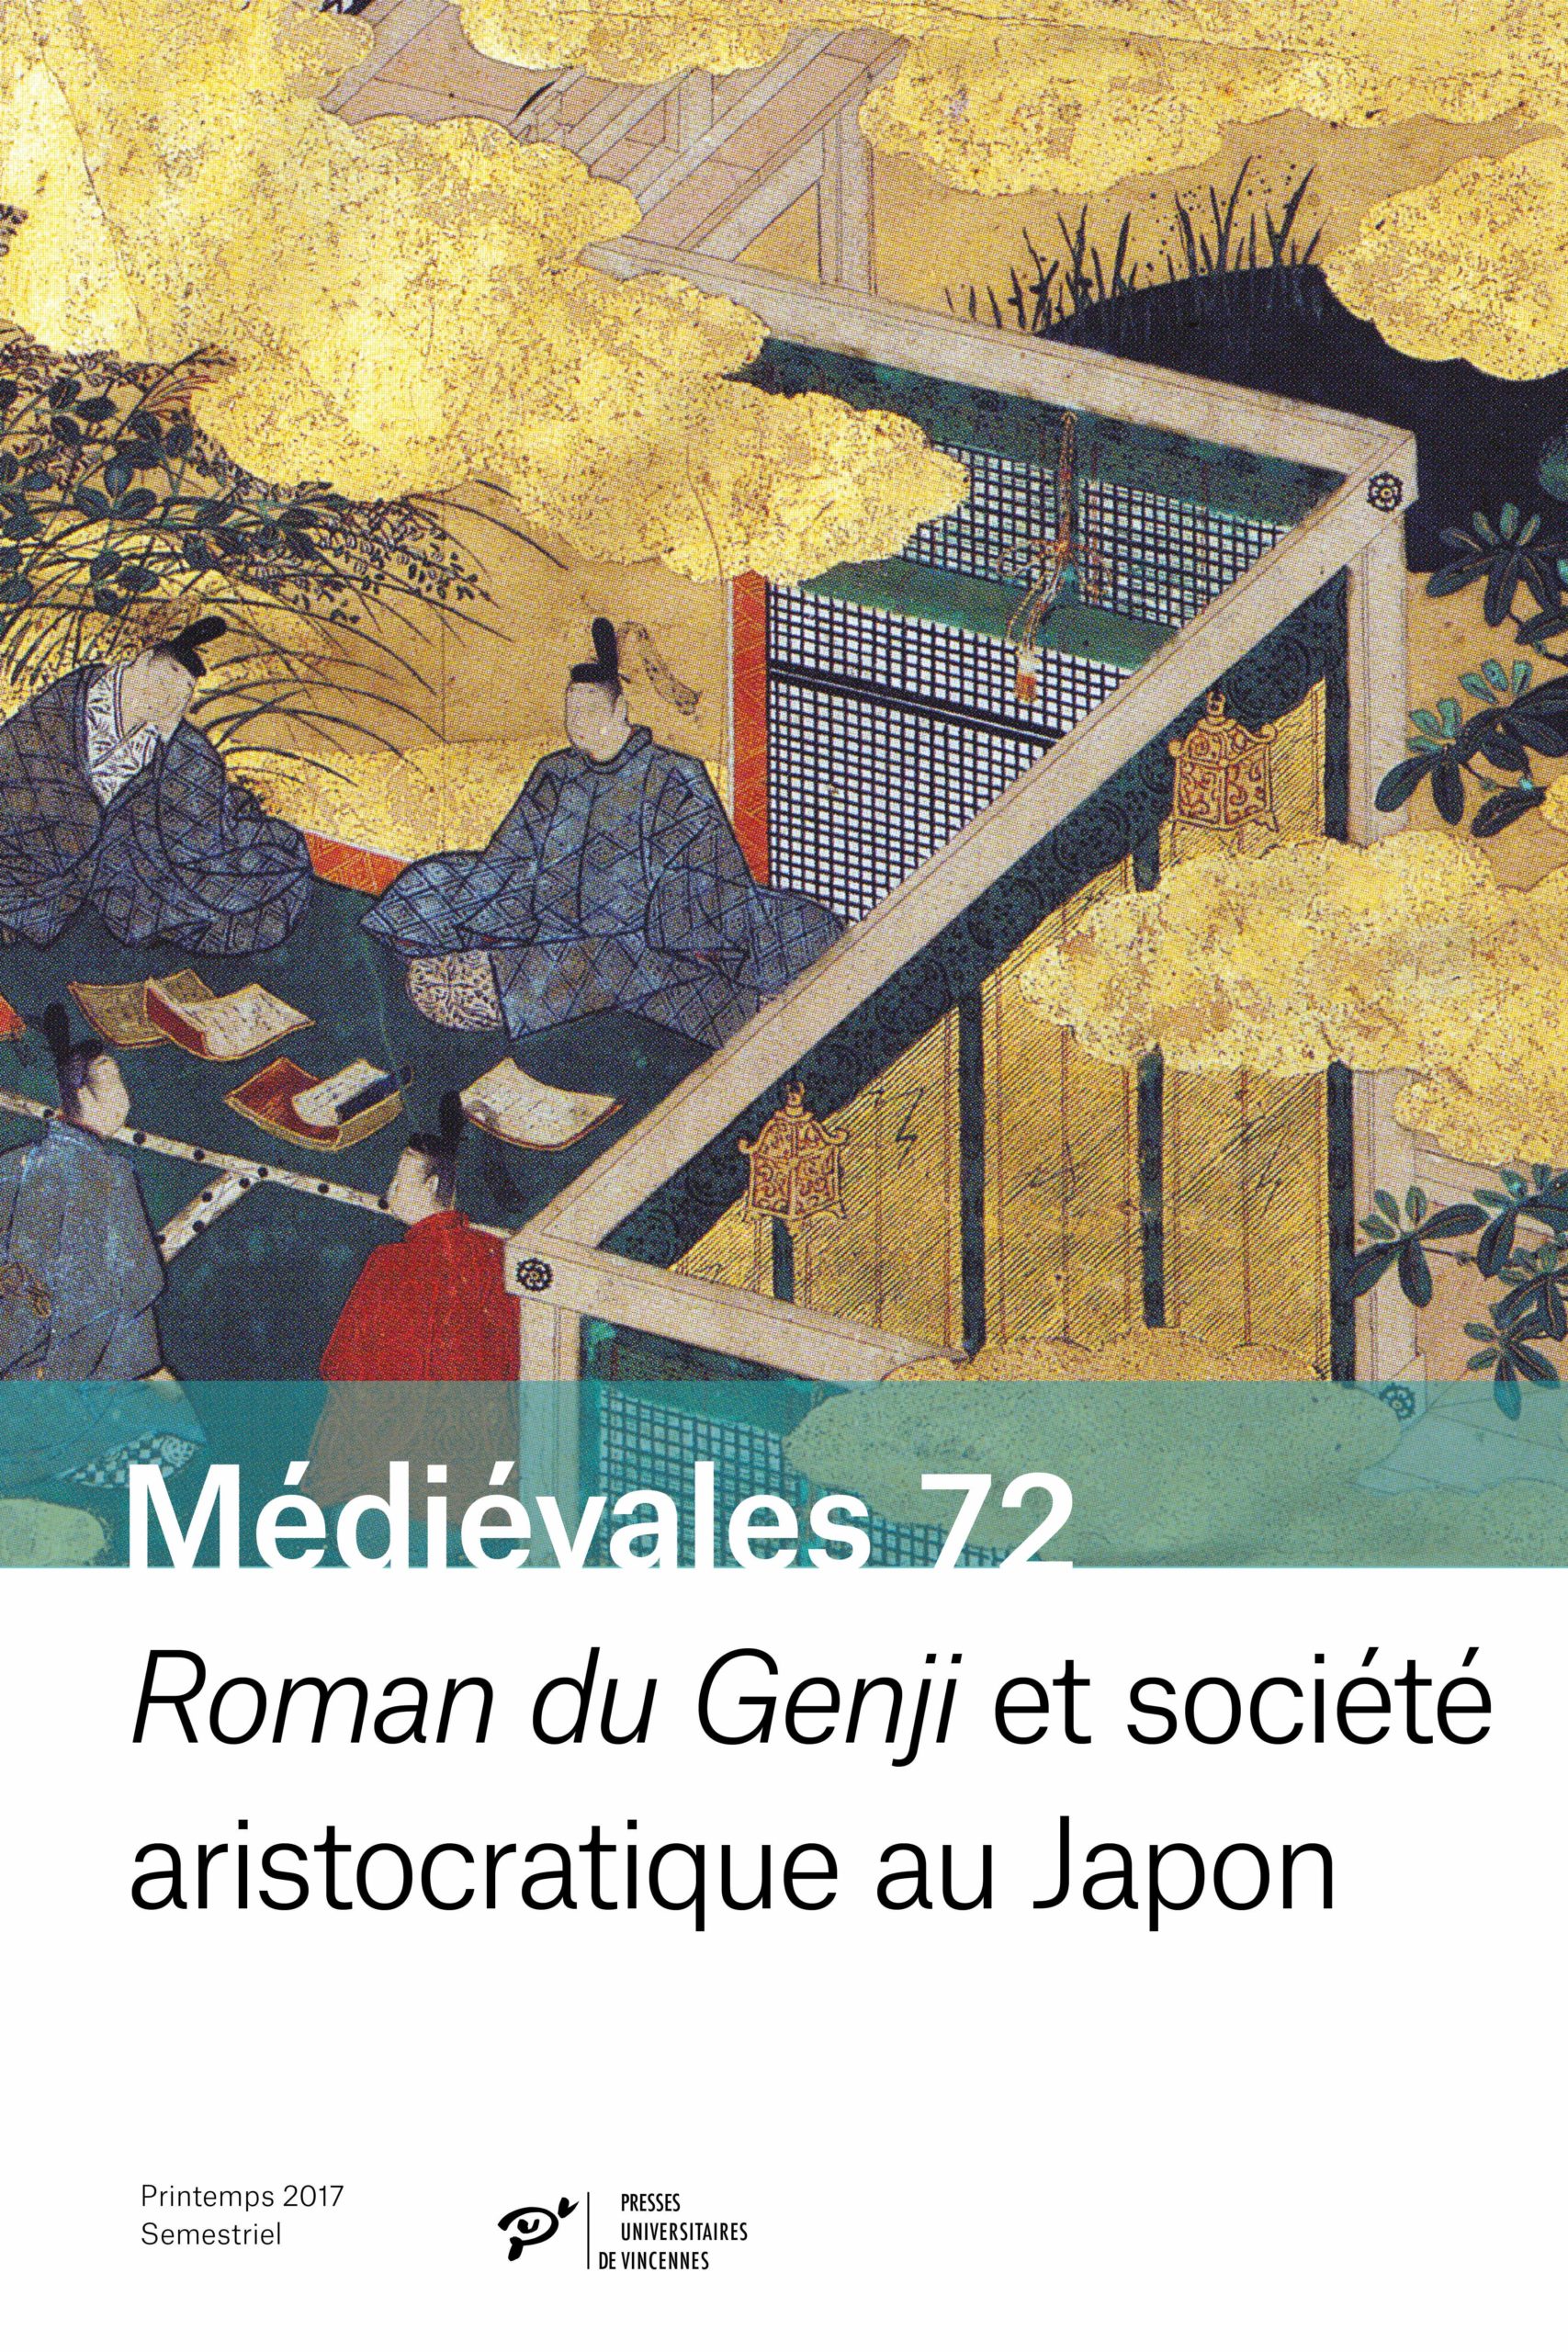 Roman du Genji et société aristocratique au Japon